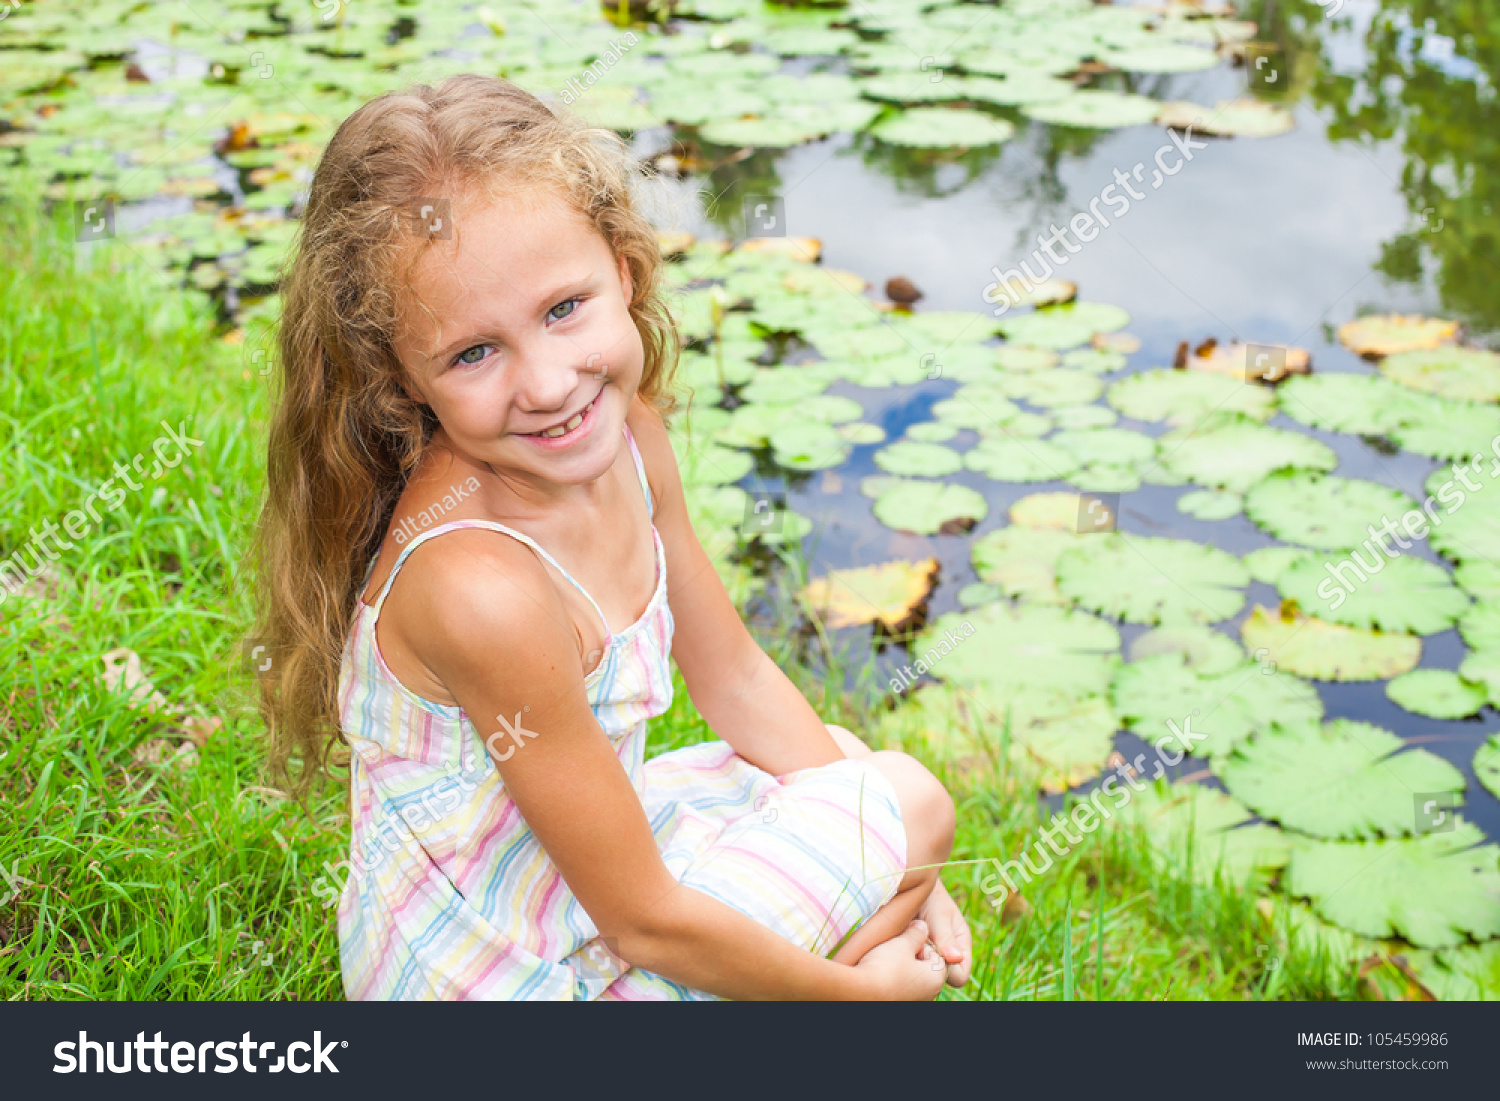 happy child near a pond #105459986